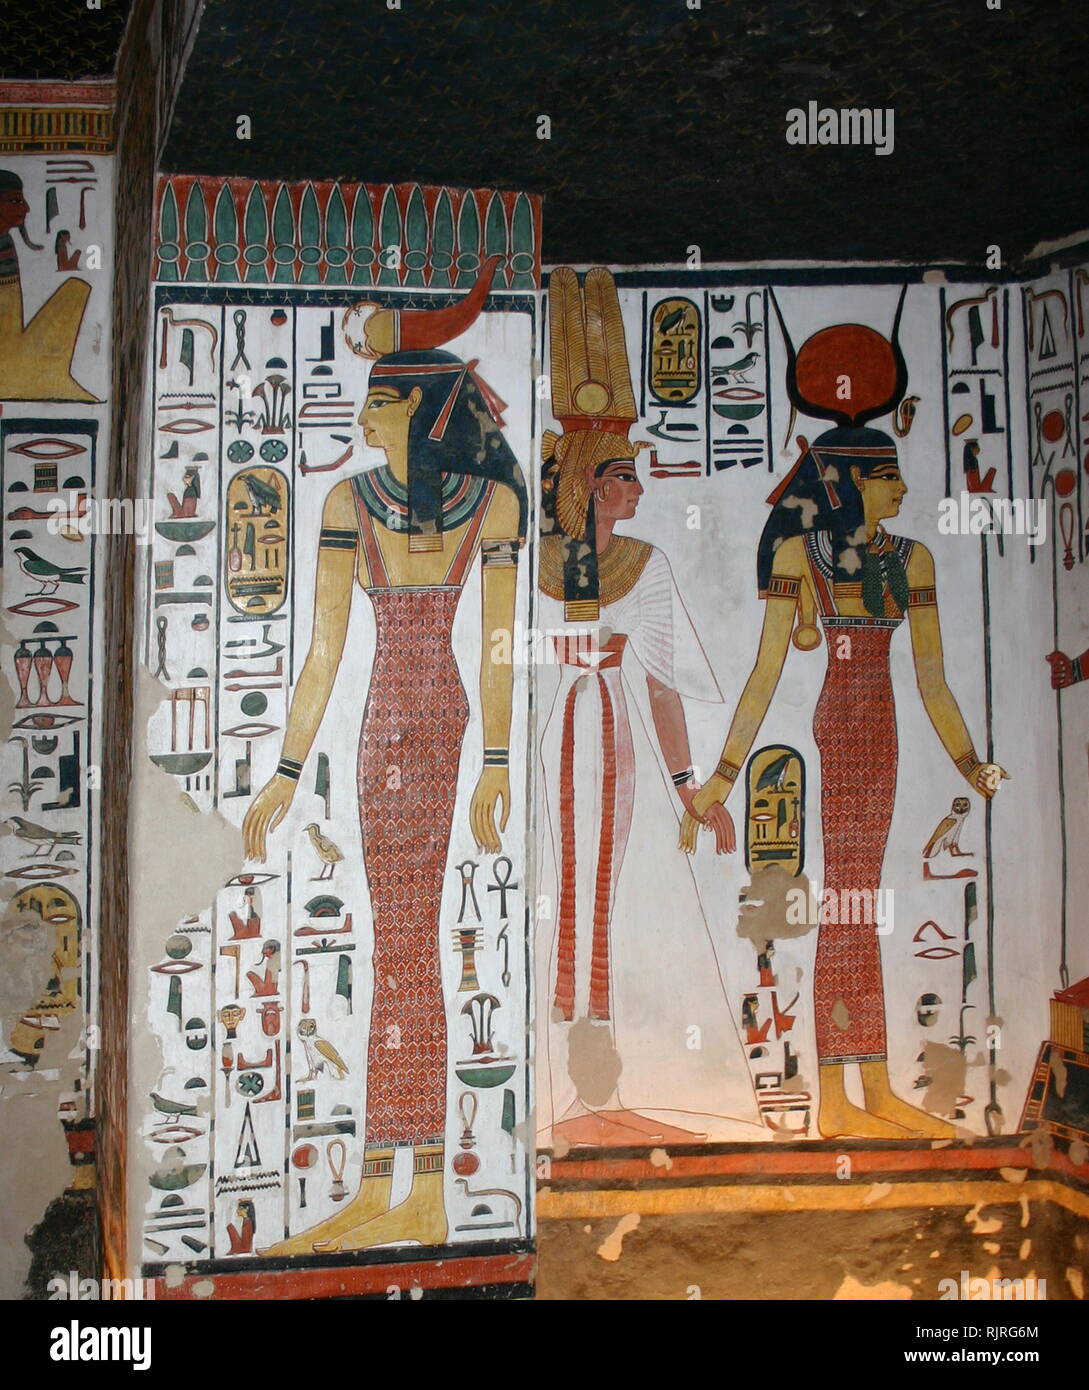 Peinture murale représentant, la déesse Isis avec Nefertari, Grande épouse du pharaon Ramsès II, à l'intérieur du tombeau (QV66) de Nefertari, selon l'Égypte Vallée des Reines. Il a été découvert par Ernesto Schiaparelli en 1904. Elle est appelée la Chapelle Sixtine de l'Égypte ancienne. Dans la Vallée des Reines, tombe de Nefertari tenue une fois le corps momifié et représentatif de ses symbolismes, comme ce que la plupart des tombeaux égyptiens se composait de. Maintenant, tout avait été pillé à l'exception de deux tiers des 5 200 pieds carrés de peintures murales. ca. 1255 BC Banque D'Images